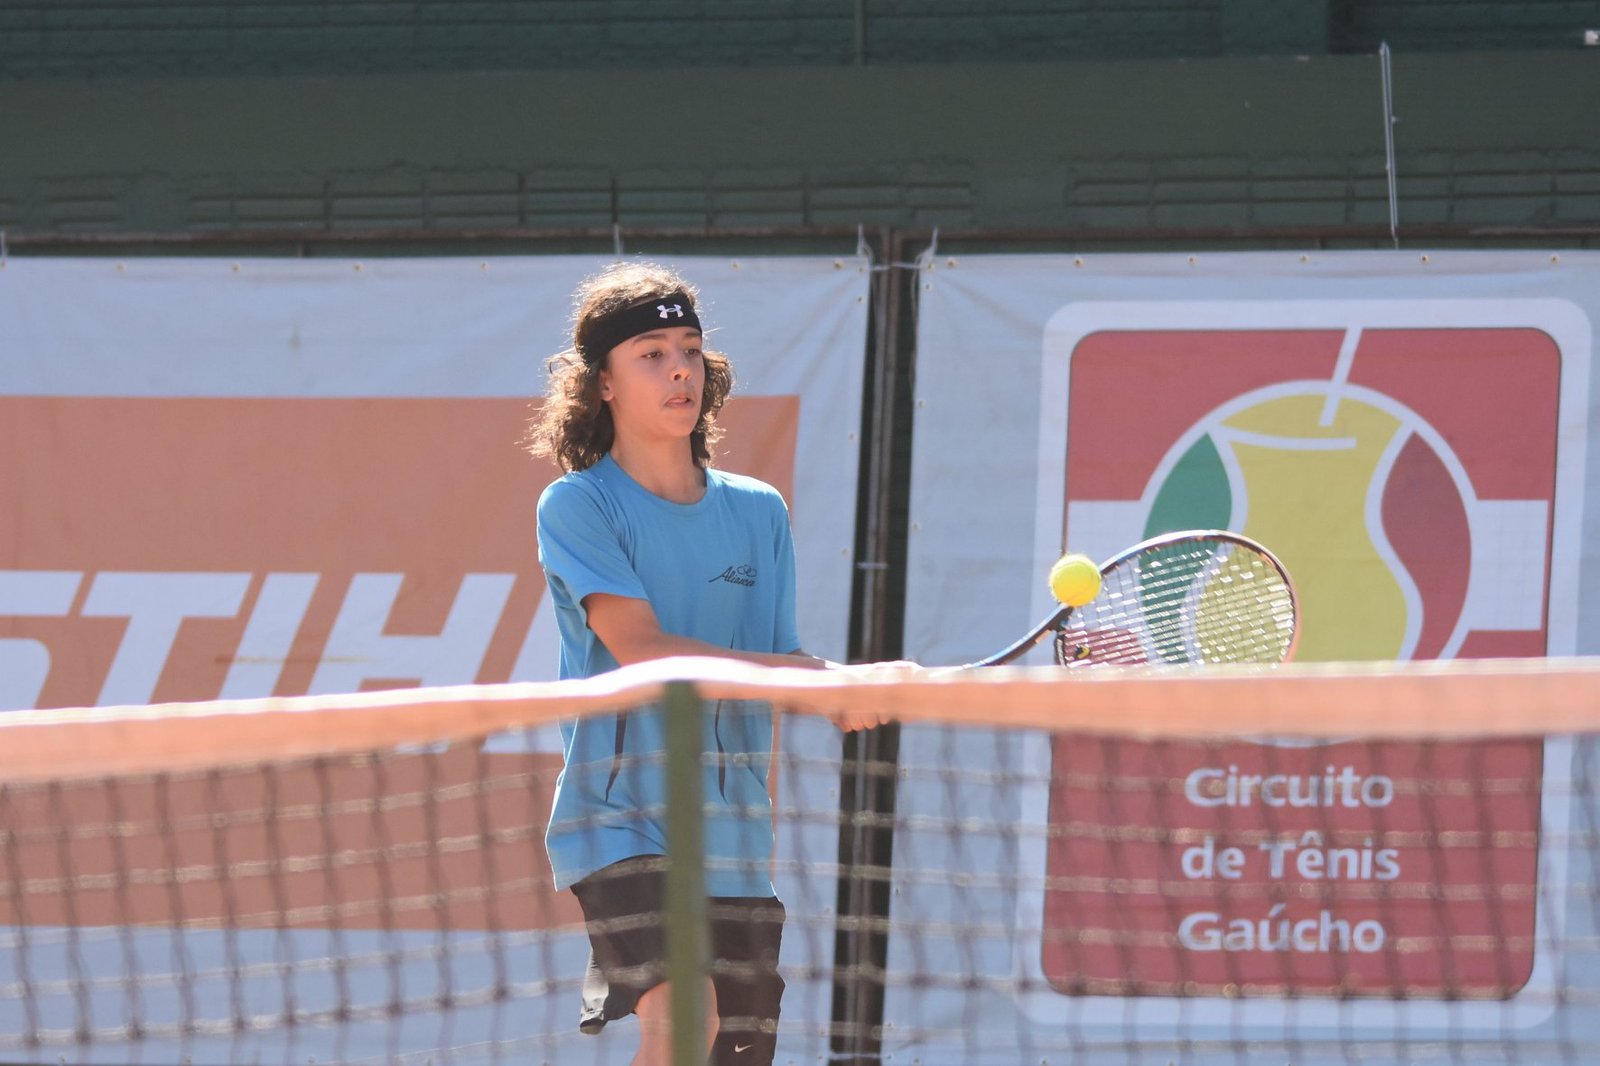 GNU e Gramado sediam etapas decisivas do Ranking de Clubes do Circuito de Tênis Gaúcho